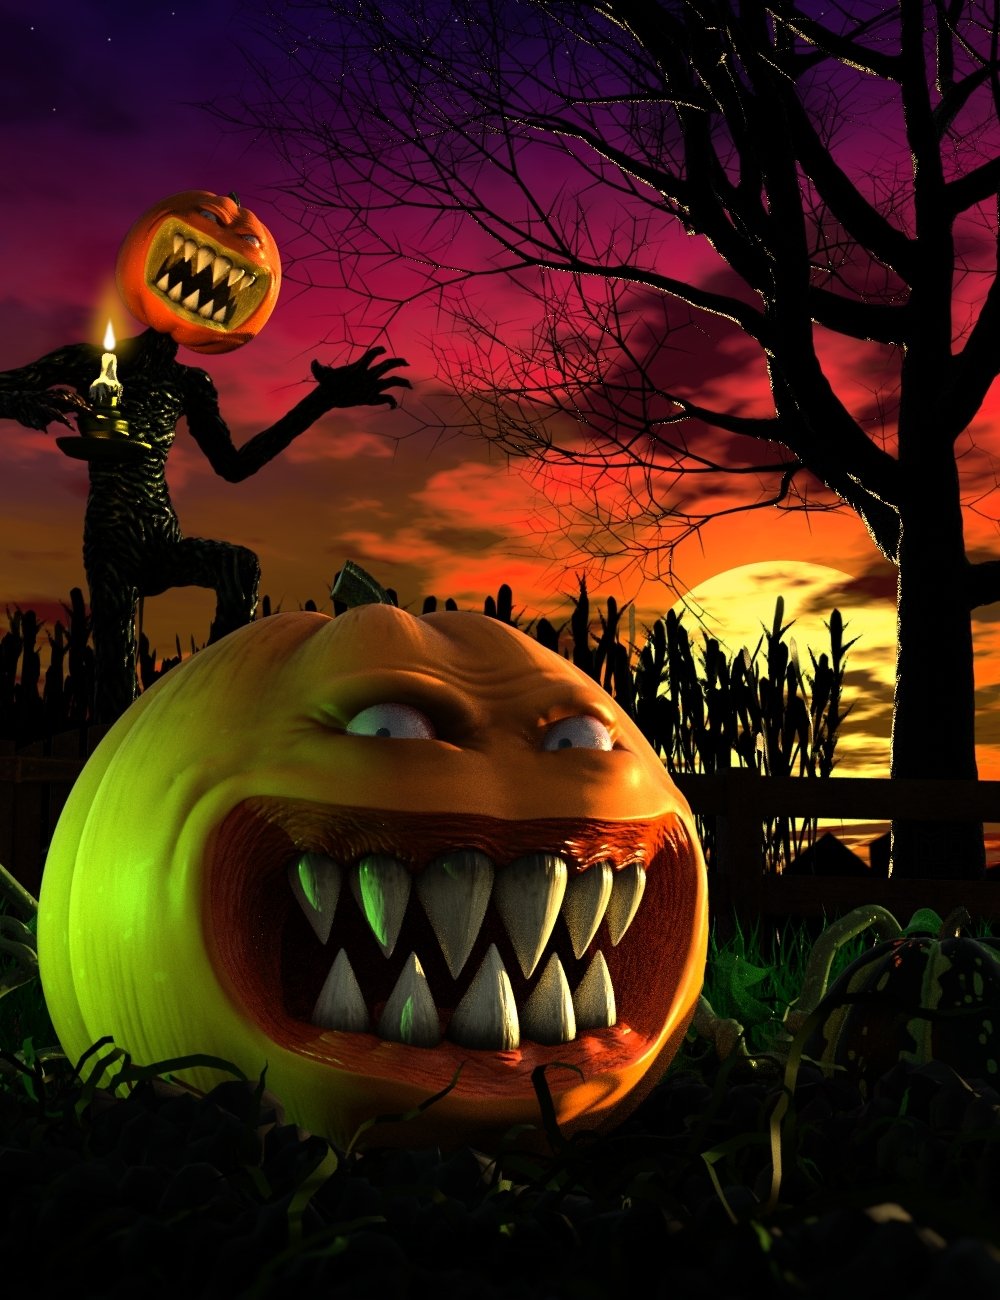 Evil Pumpkin HD for Genesis 8 Male by: Mechasar, 3D Models by Daz 3D